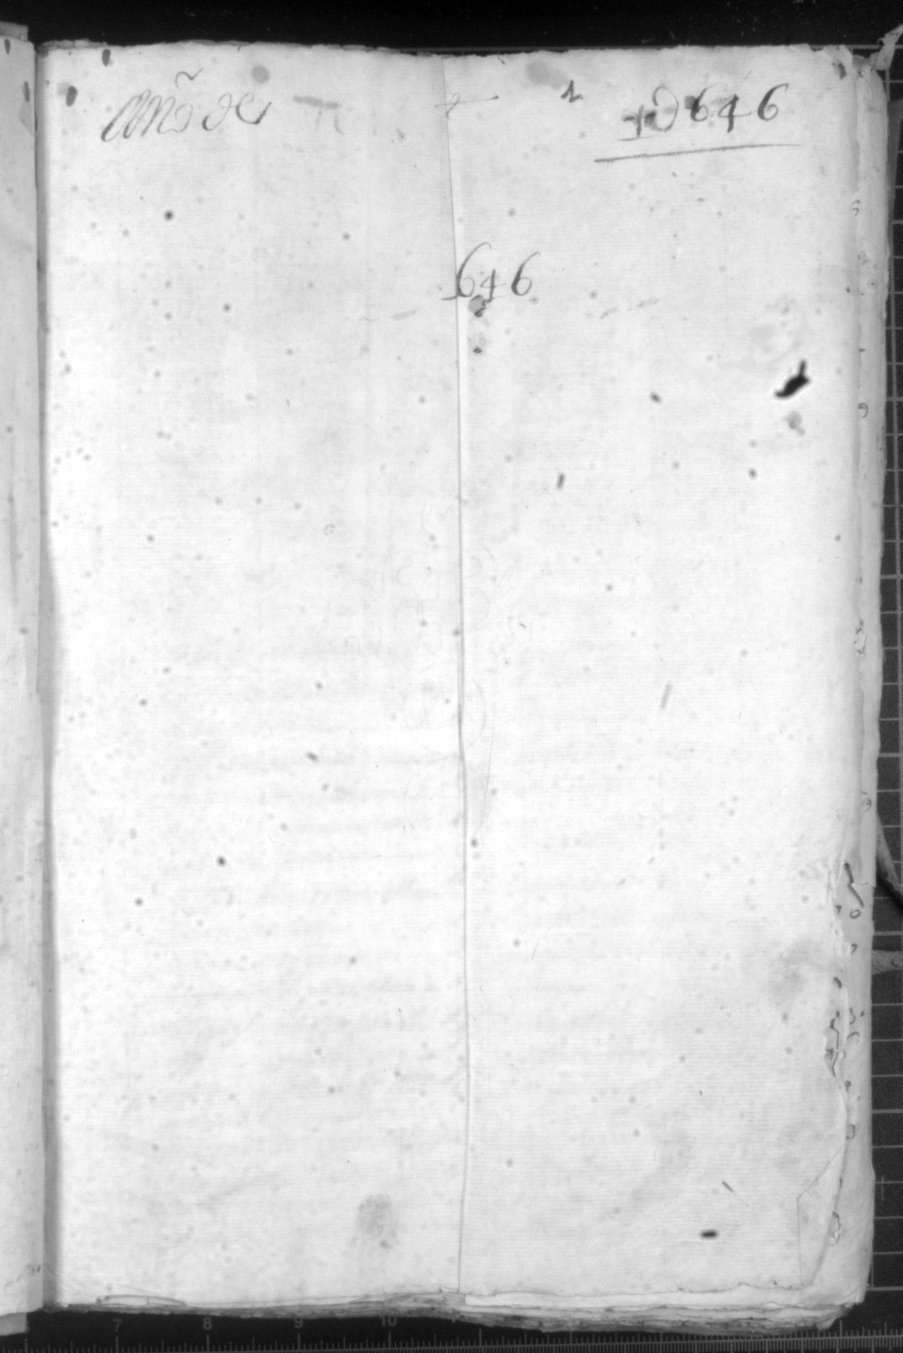 Registro de Juan Gómez de Olmedo, Murcia de 1646.